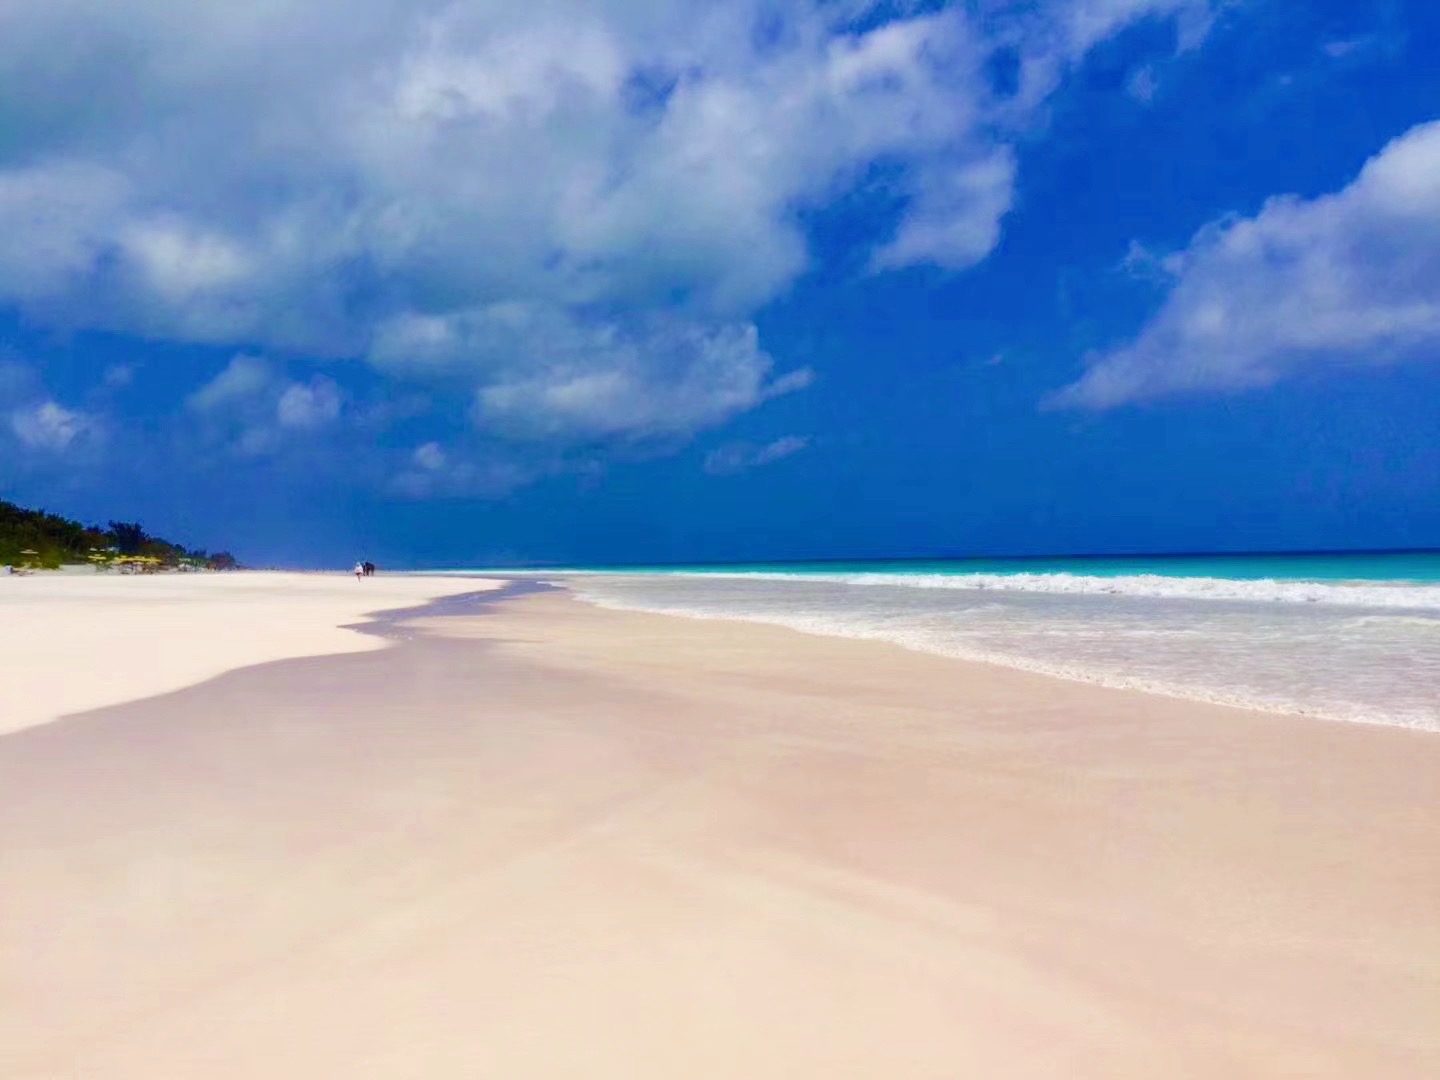 巴哈马的哈勃岛，世界上独一无二的粉红色沙滩。从拿骚坐船到哈勃岛，将近3个小时，票价135$。从码头到